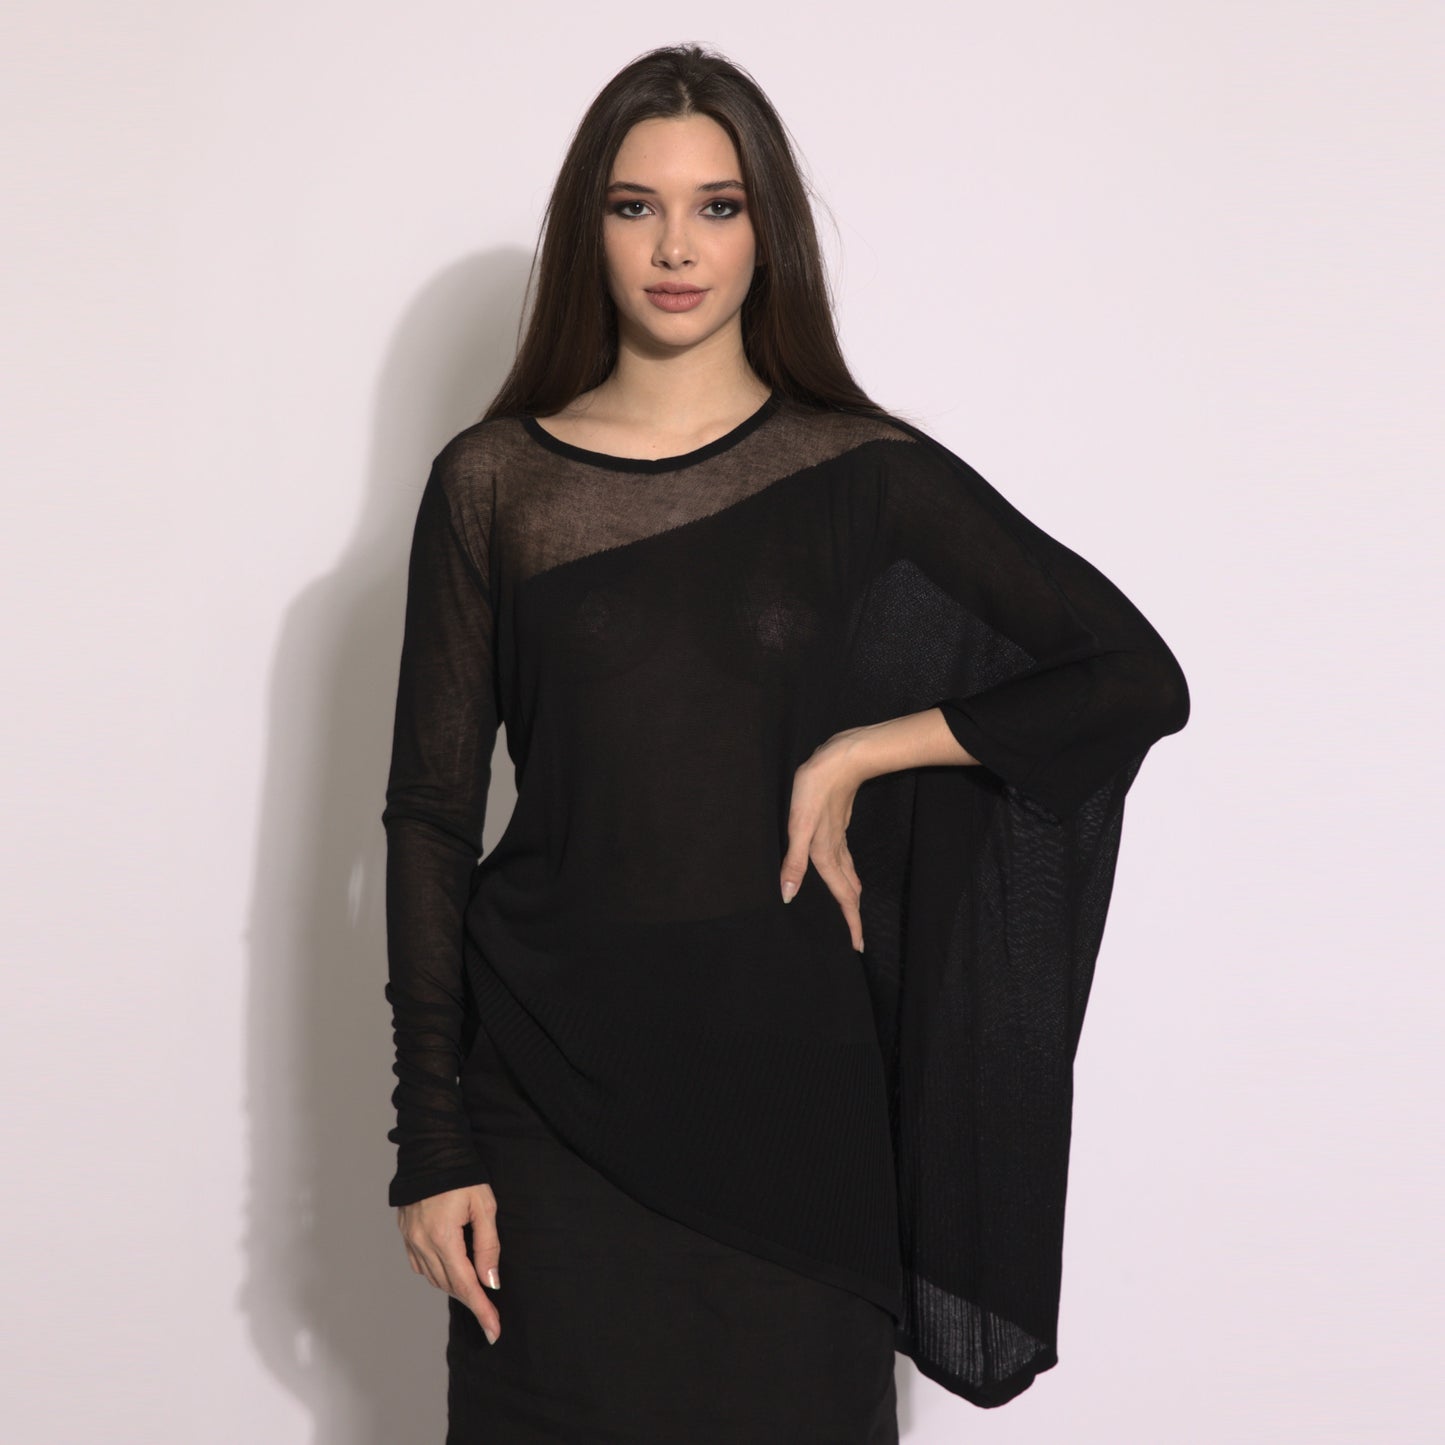 Kaya - Blusa de tricot assimétrica na cor preta com transparencia